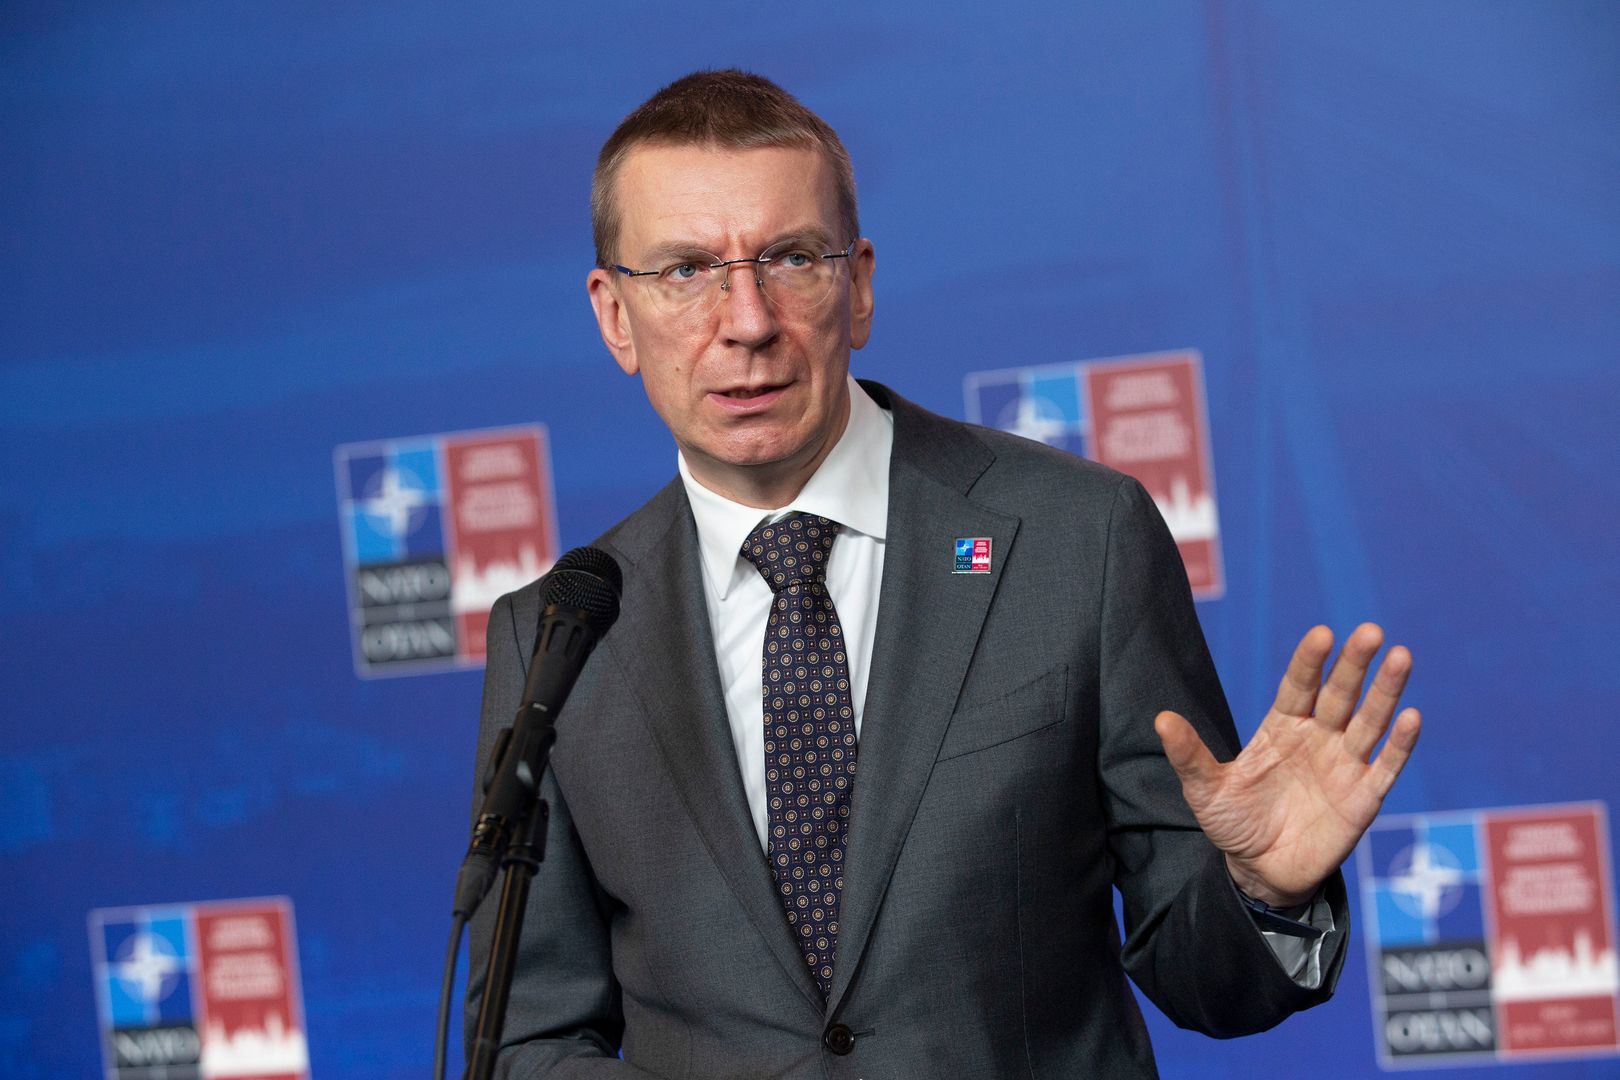 Министр иностранных дел латвии эдгарс ринкевичс фото